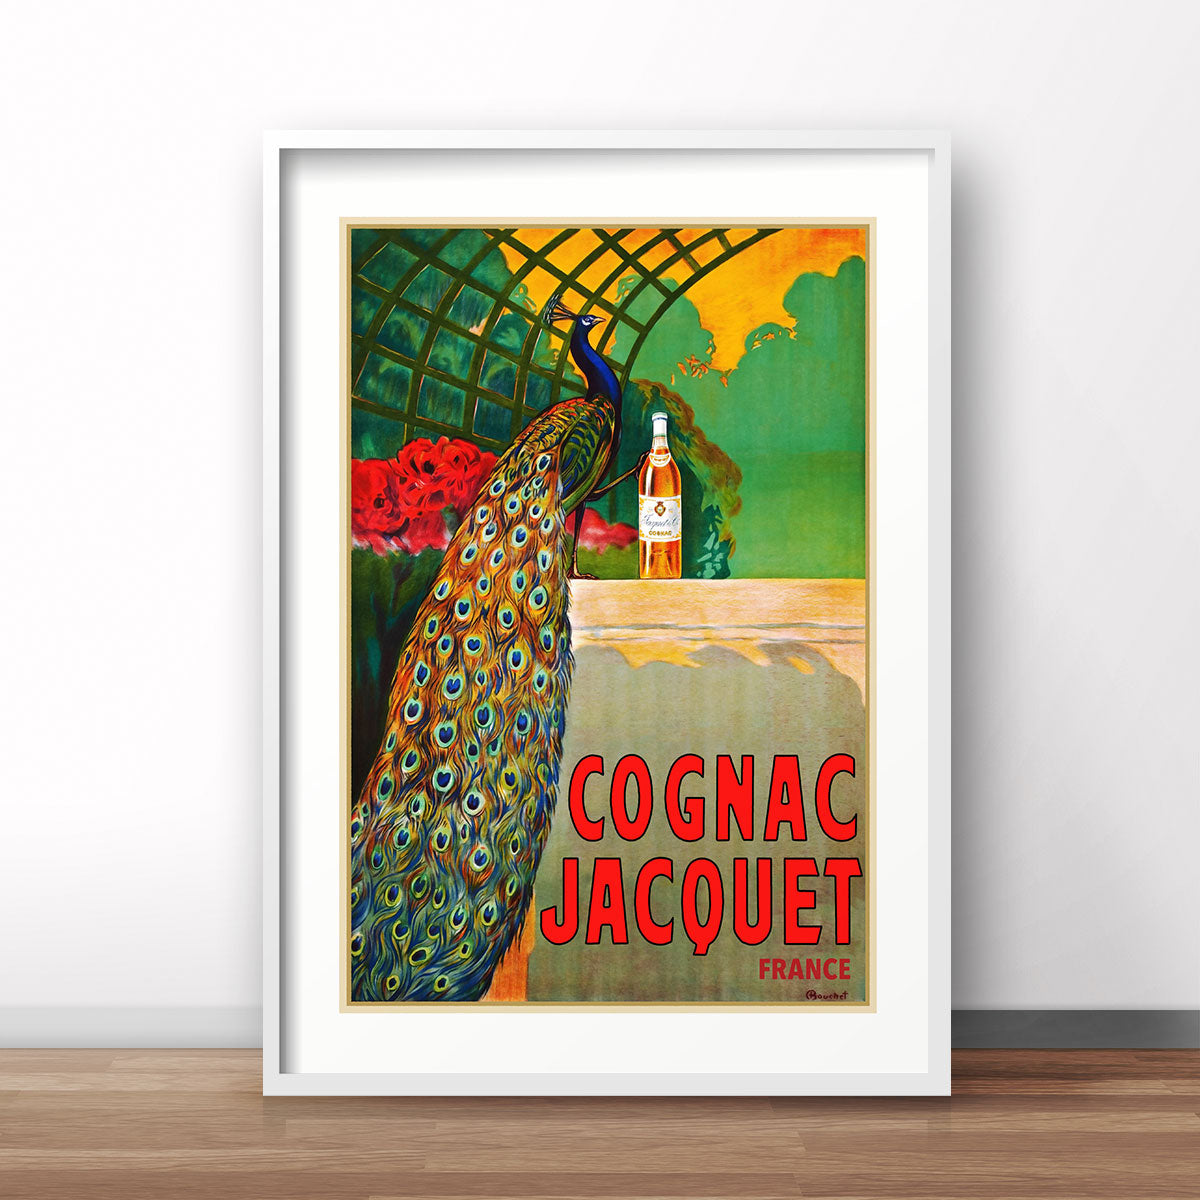 Cognac Jacquet France vintage poster